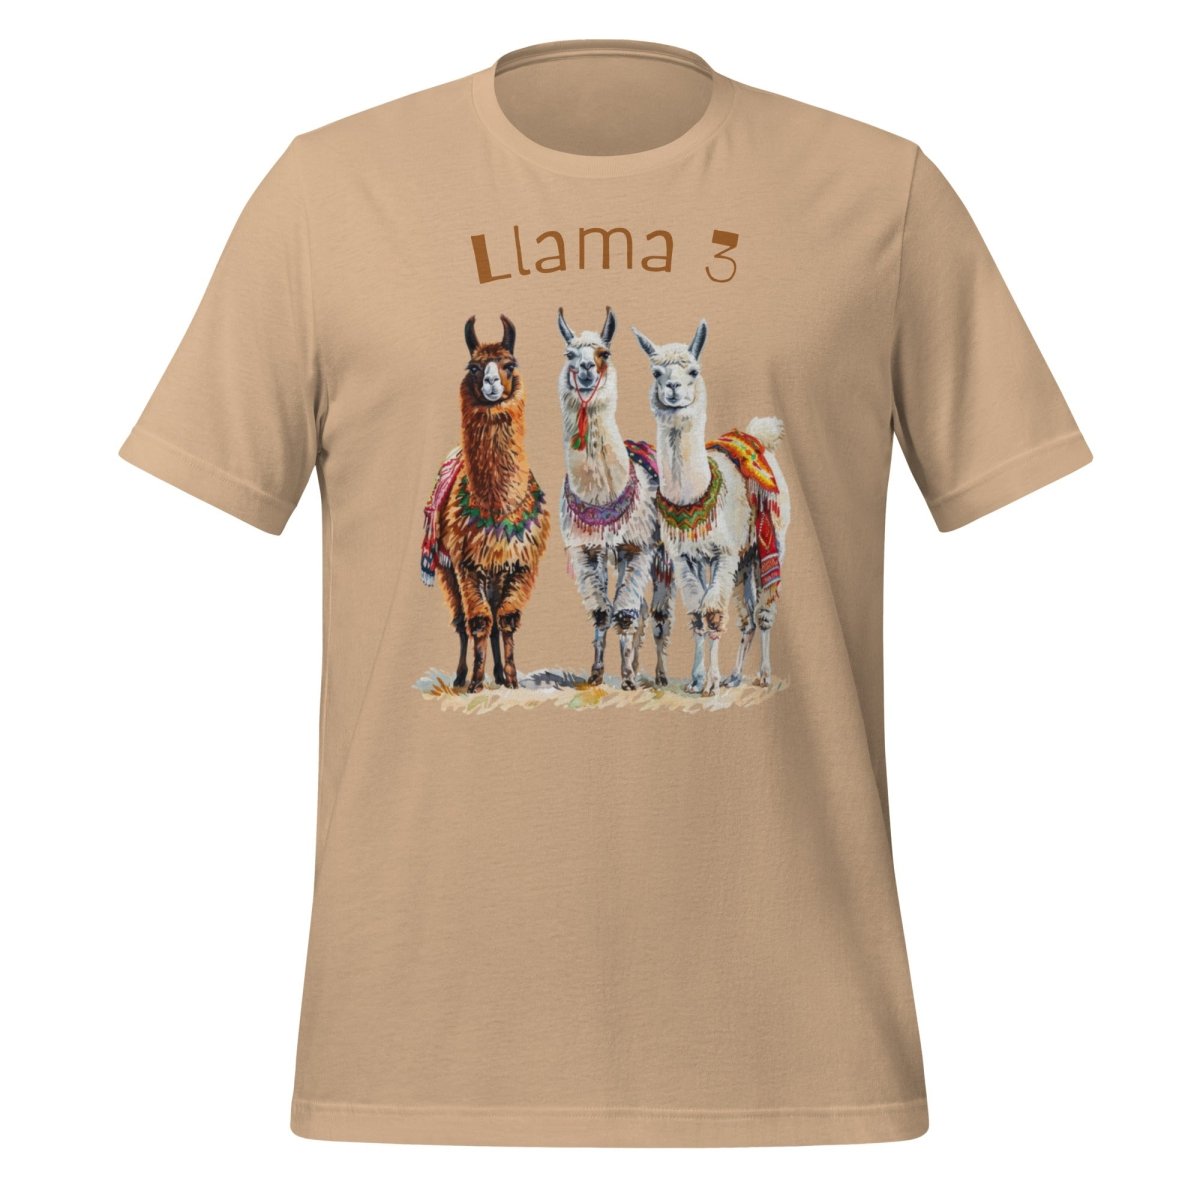 3 Llama 3 Llamas T - Shirt (unisex) - Tan - AI Store